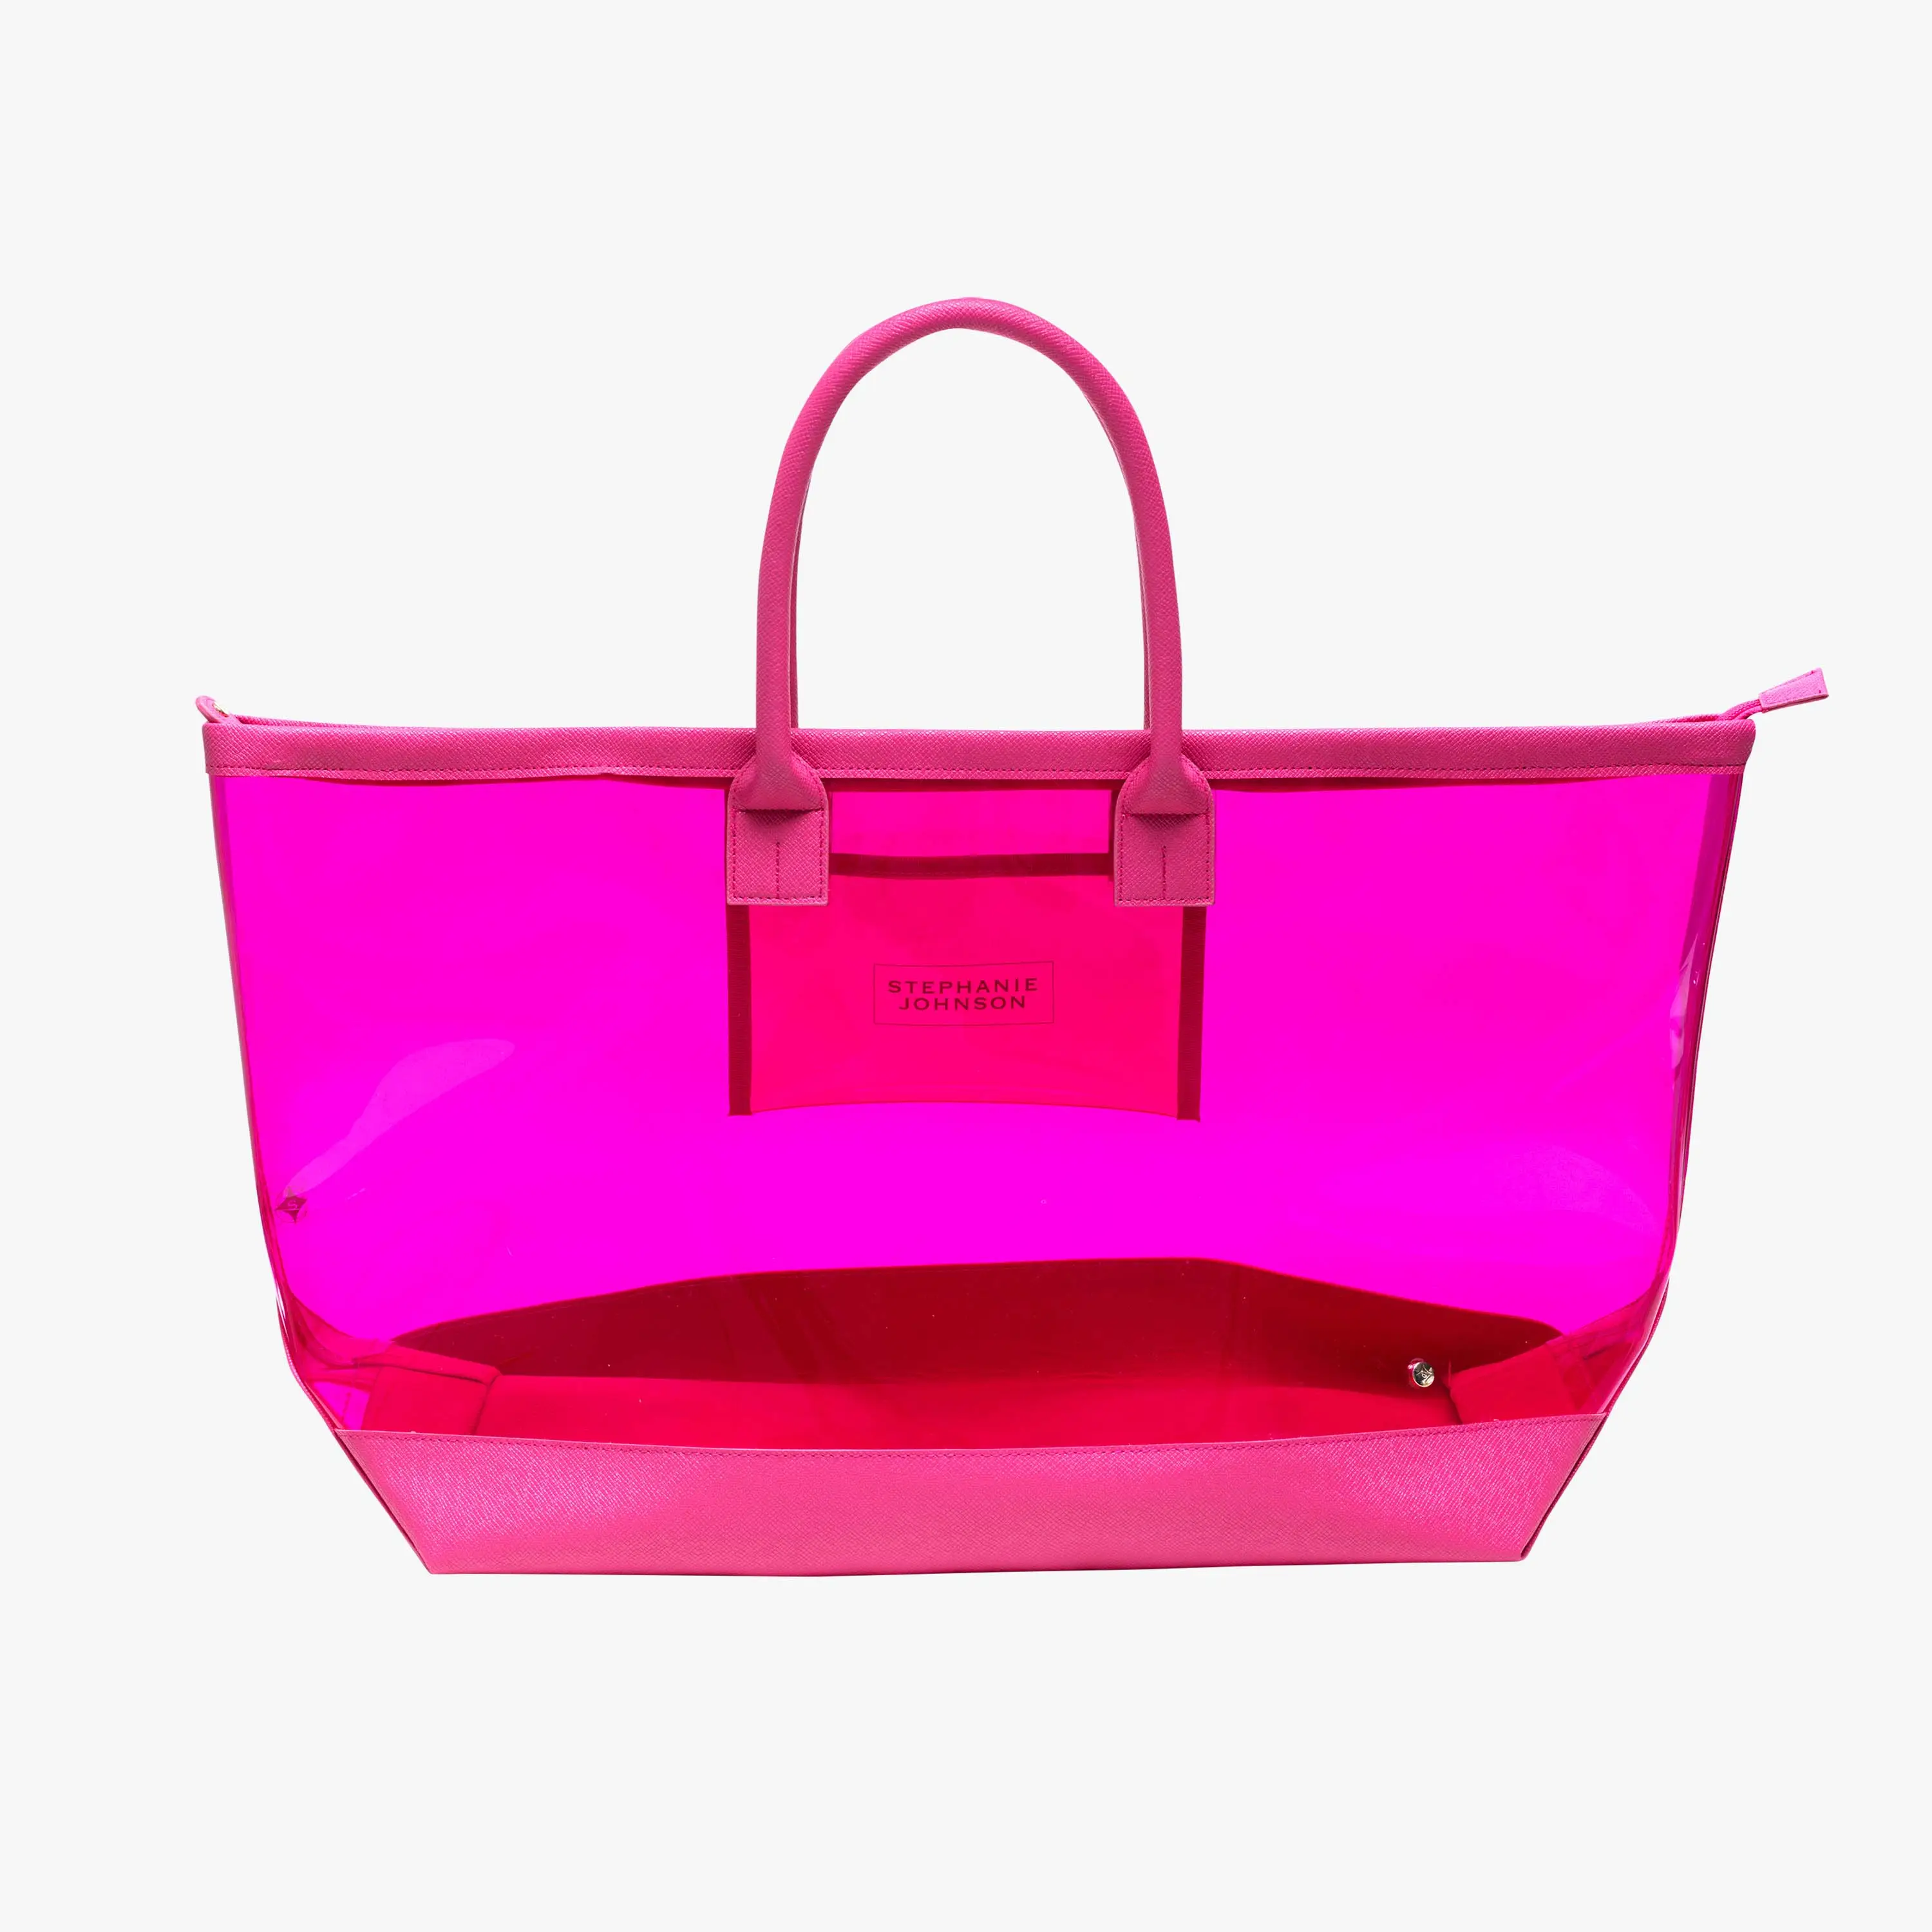 กระเป๋าโท้ทสำหรับผู้หญิงกระเป๋าสะพายไหล่ทำจากพีวีซีเจลลี่พลาสติกสีใสปรับแต่งได้